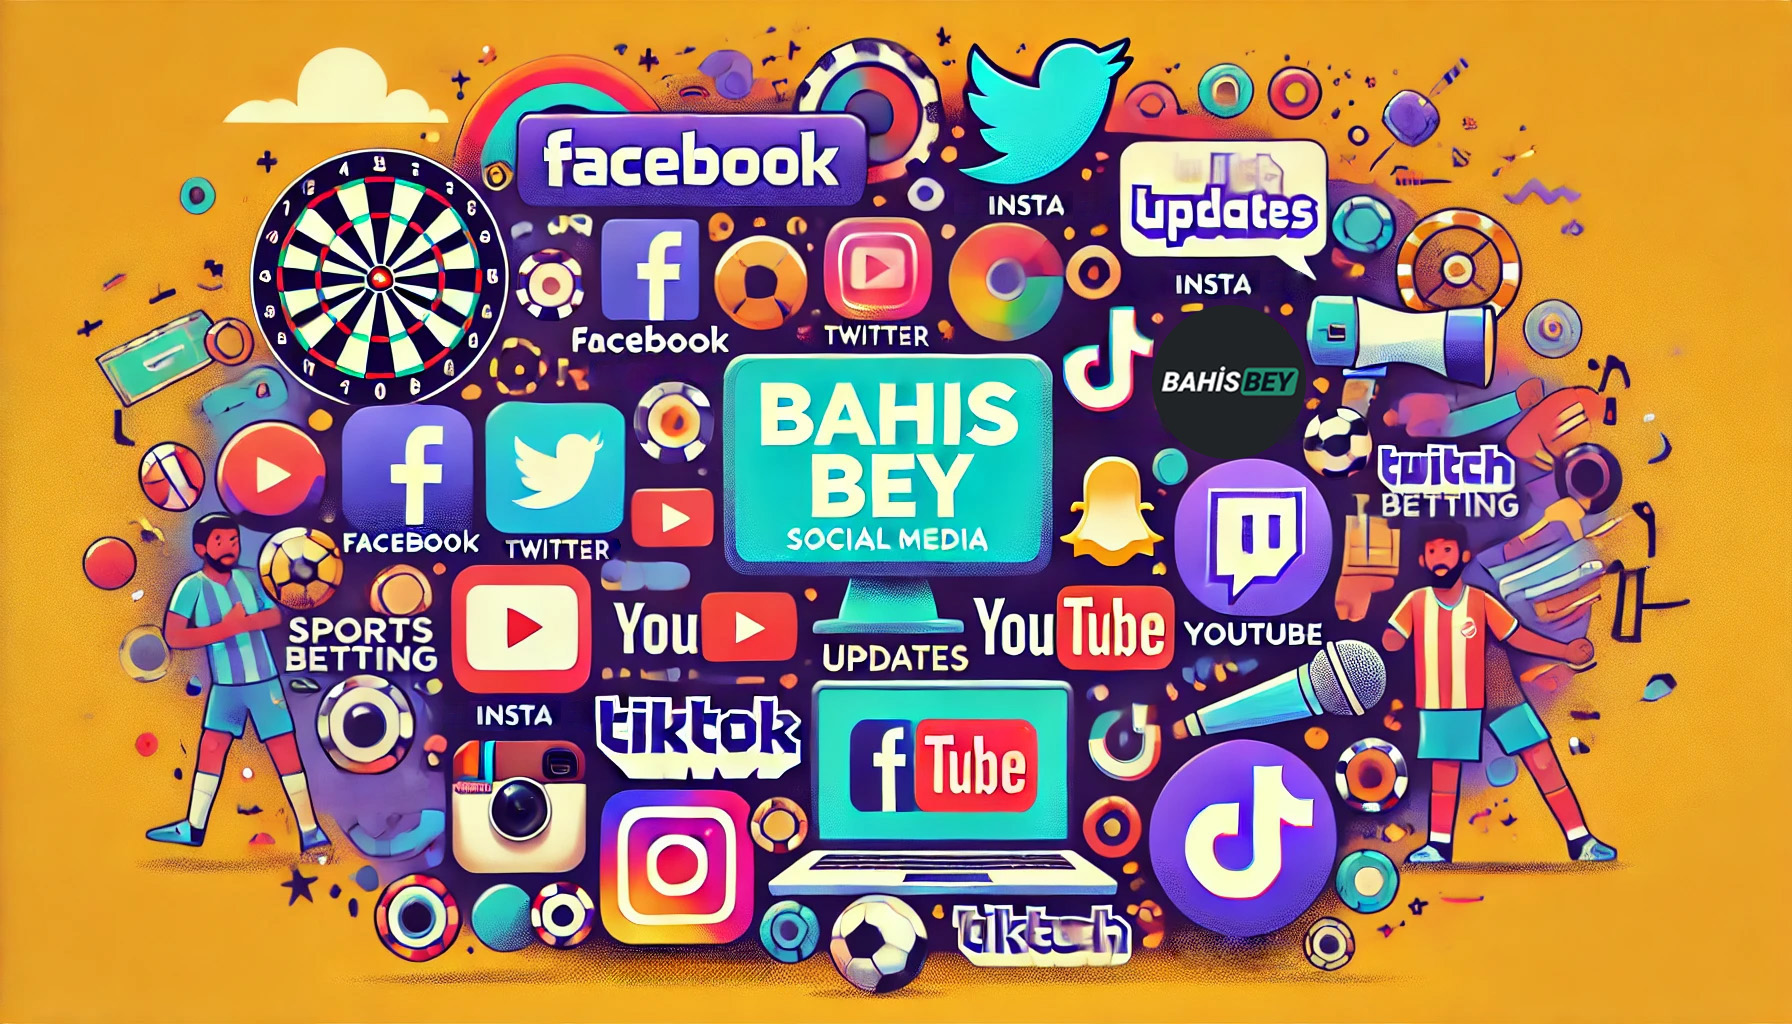 Bahisbey Sosyal Medya Hesapları İncelemesi: Stratejiler ve Başarı Öyküleri